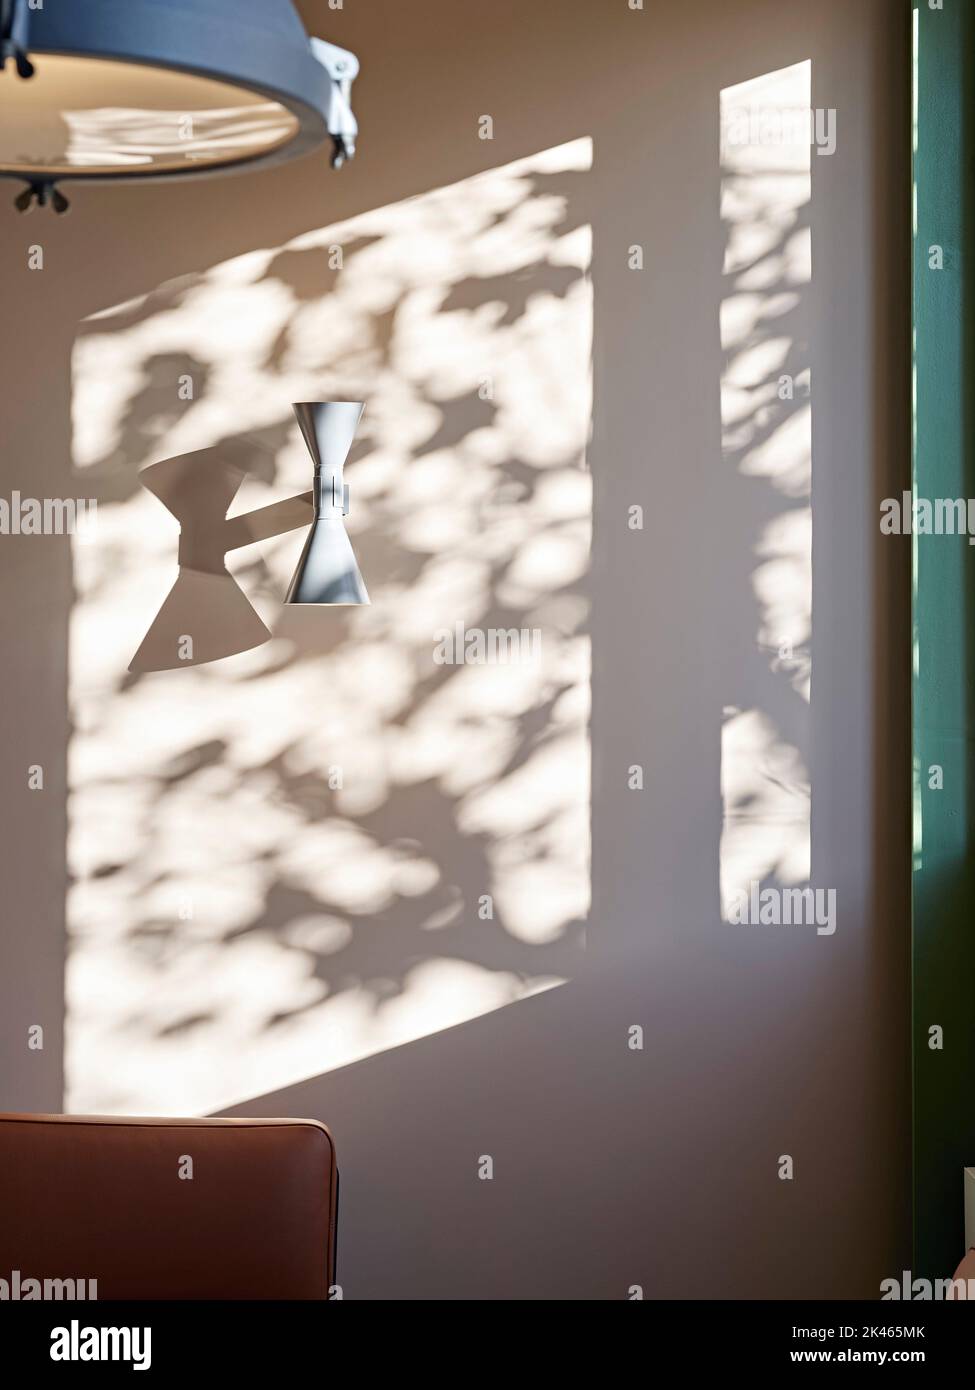 Lumière du soleil entrante et détails des ombres. Pall Mall Deposit, Londres, Royaume-Uni. Architecte: Stiff + Trevillion Architects, 2021. Banque D'Images